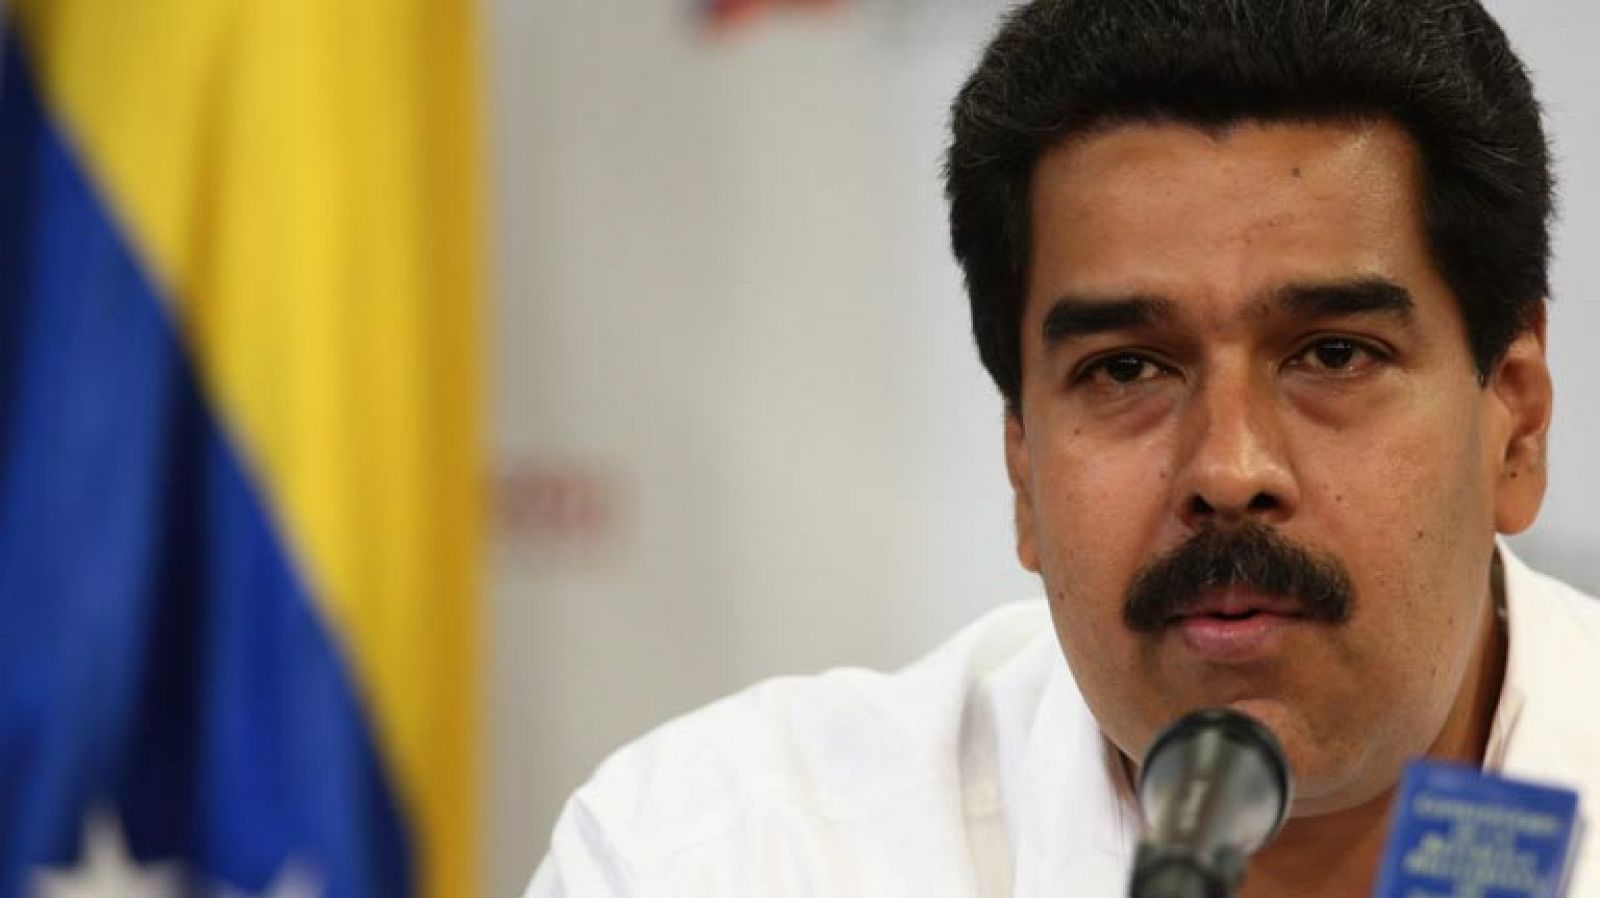 Telediario 1: El vicepresidente venezolano, Nicolás Maduro, informa del delicado momento de Chávez | RTVE Play